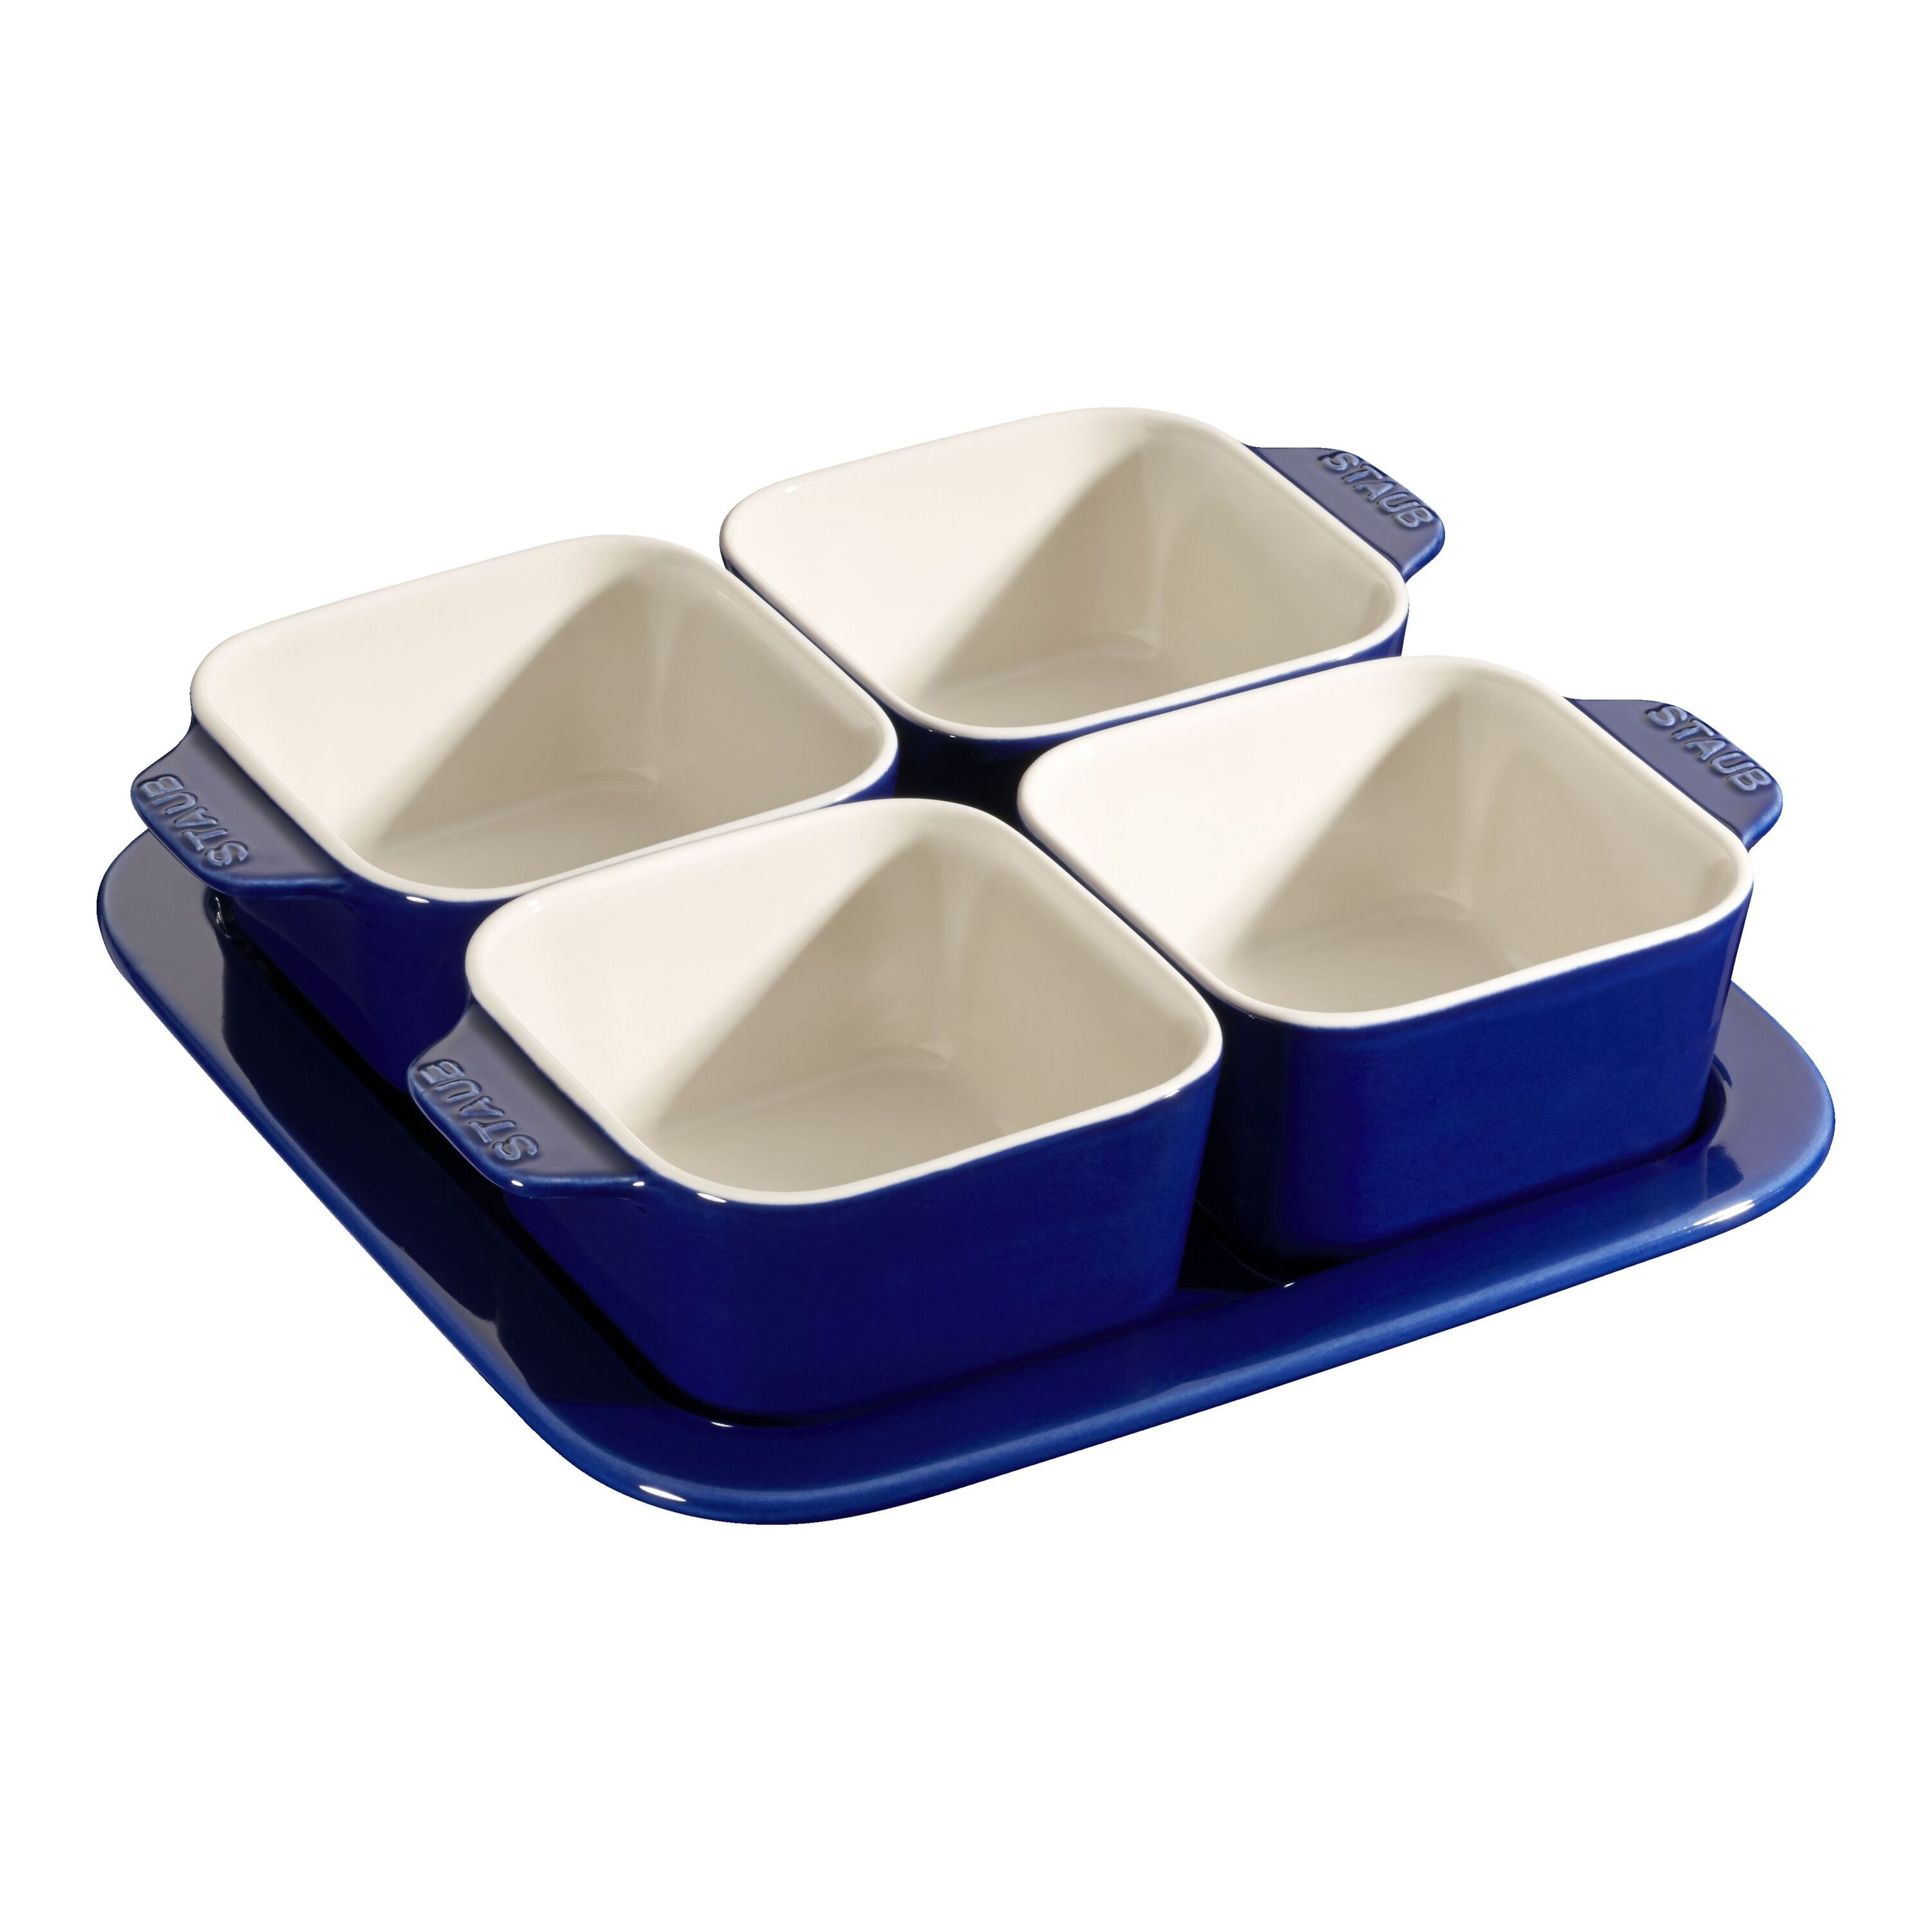 Buy Staub Ceramique Appetiser set | ZWILLING.COM